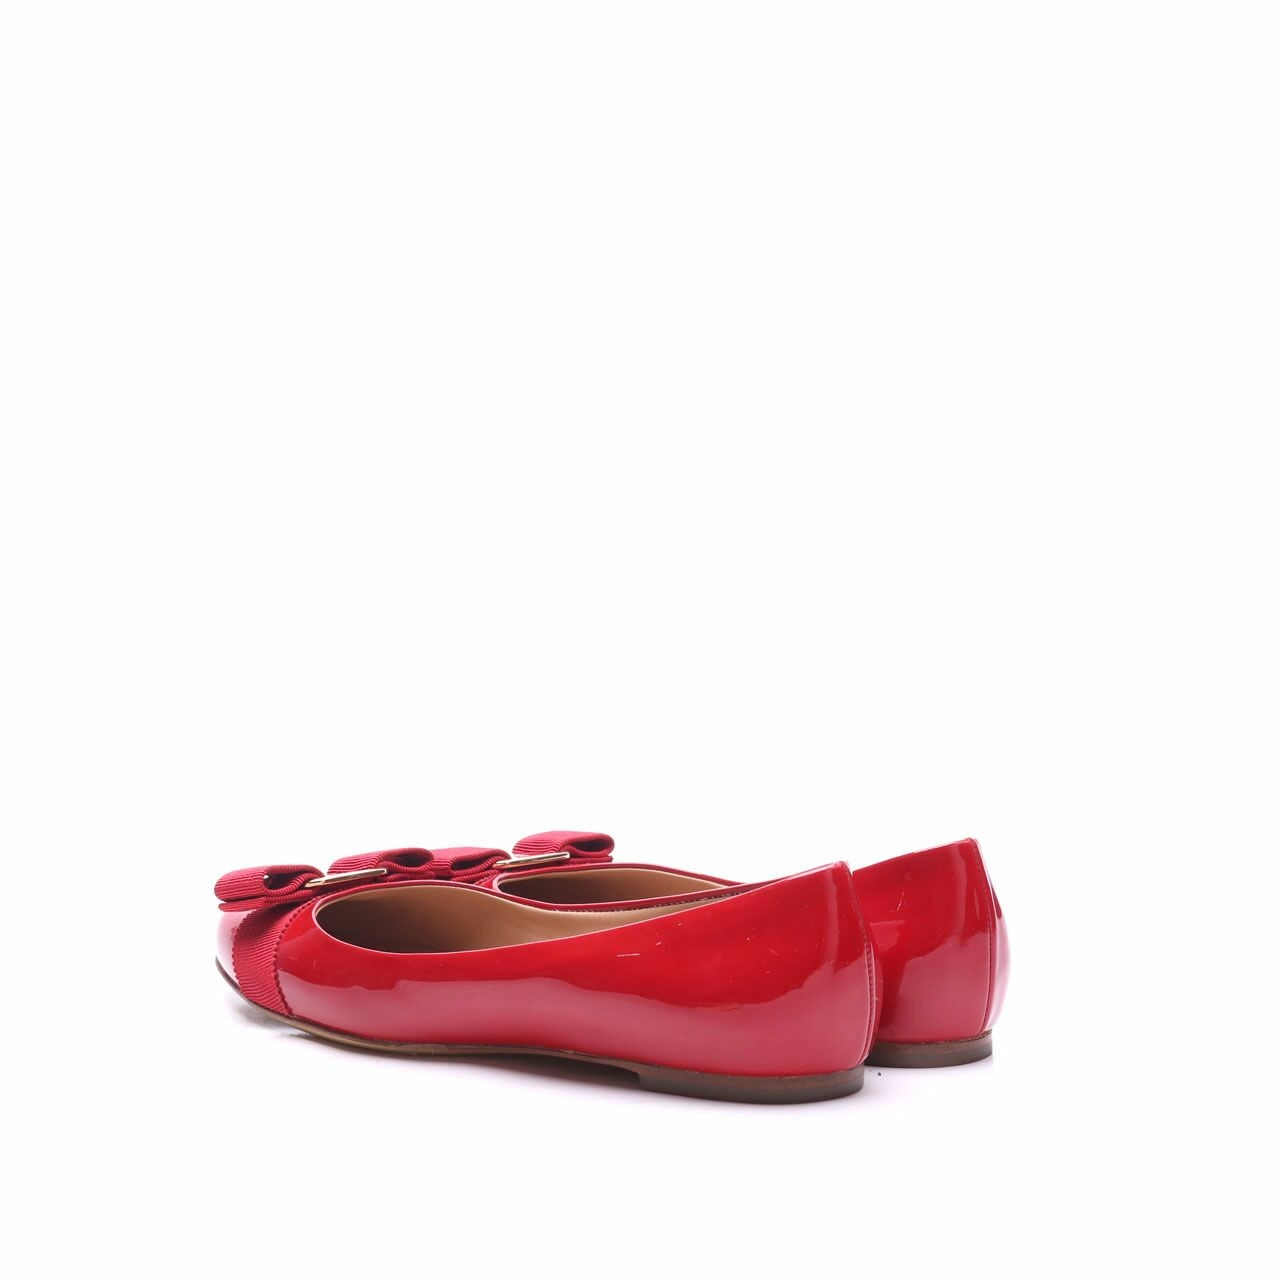  Salvatore Ferragamo Red Varina Flats Shoes